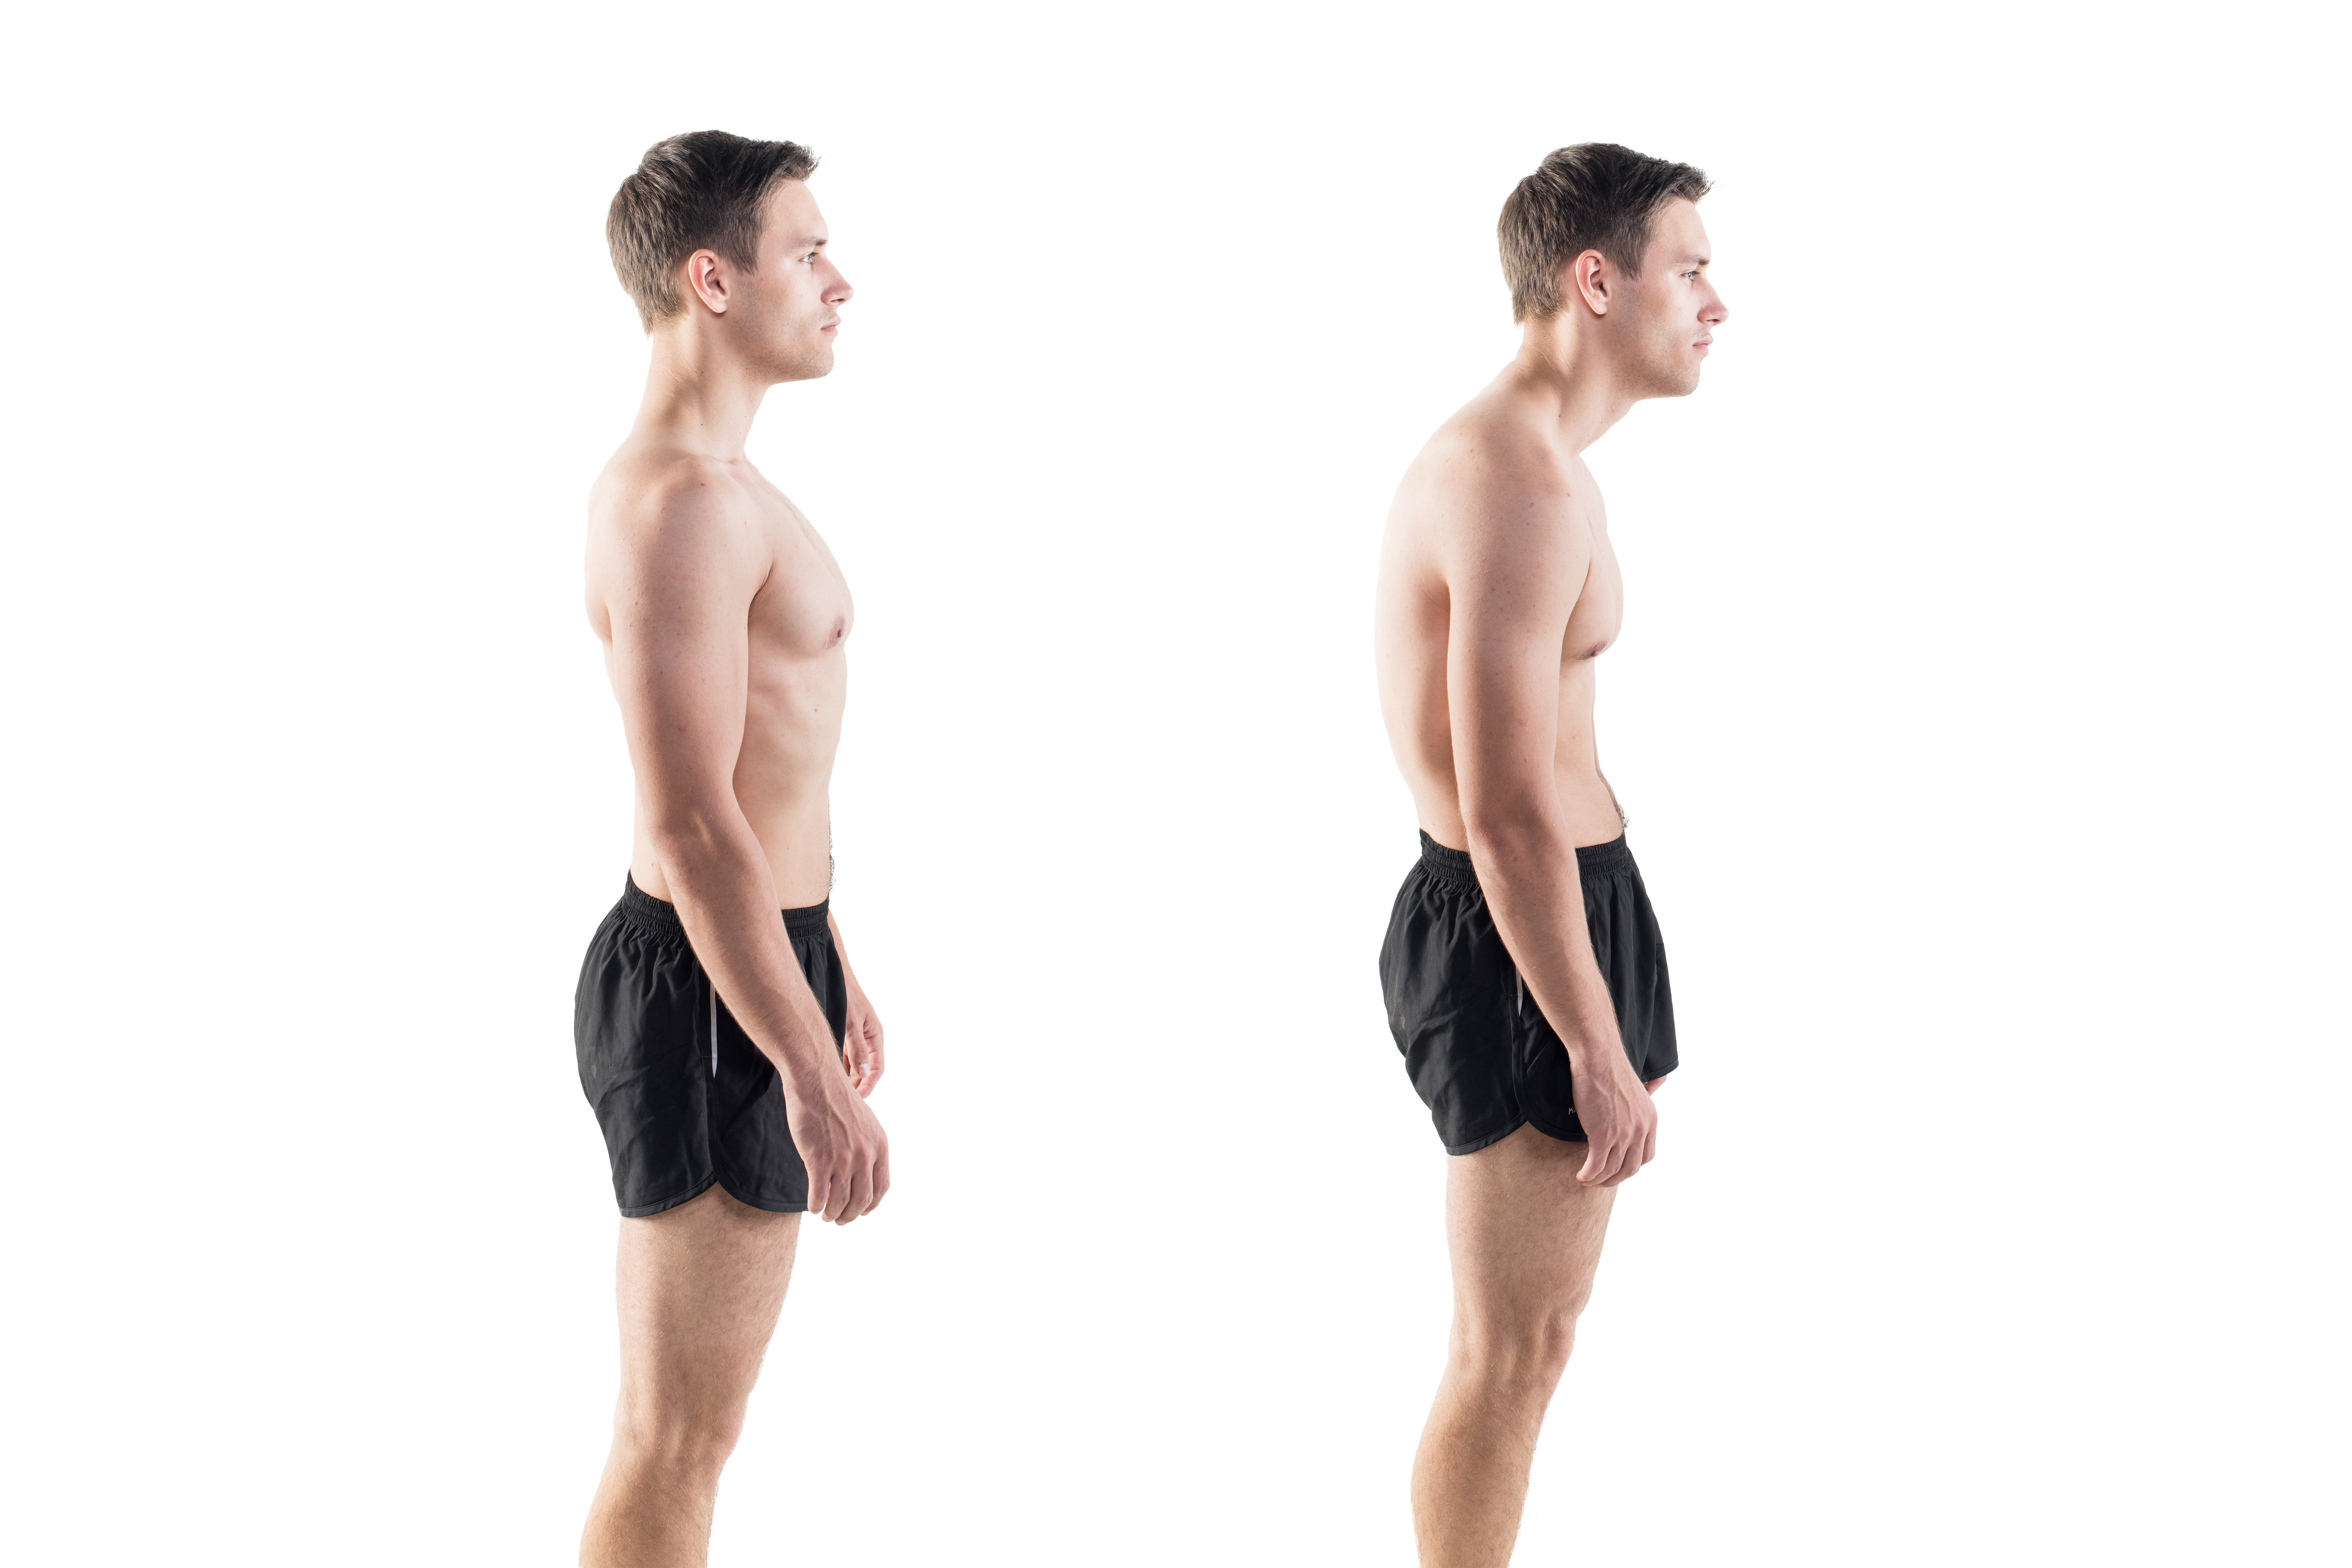 improve posture